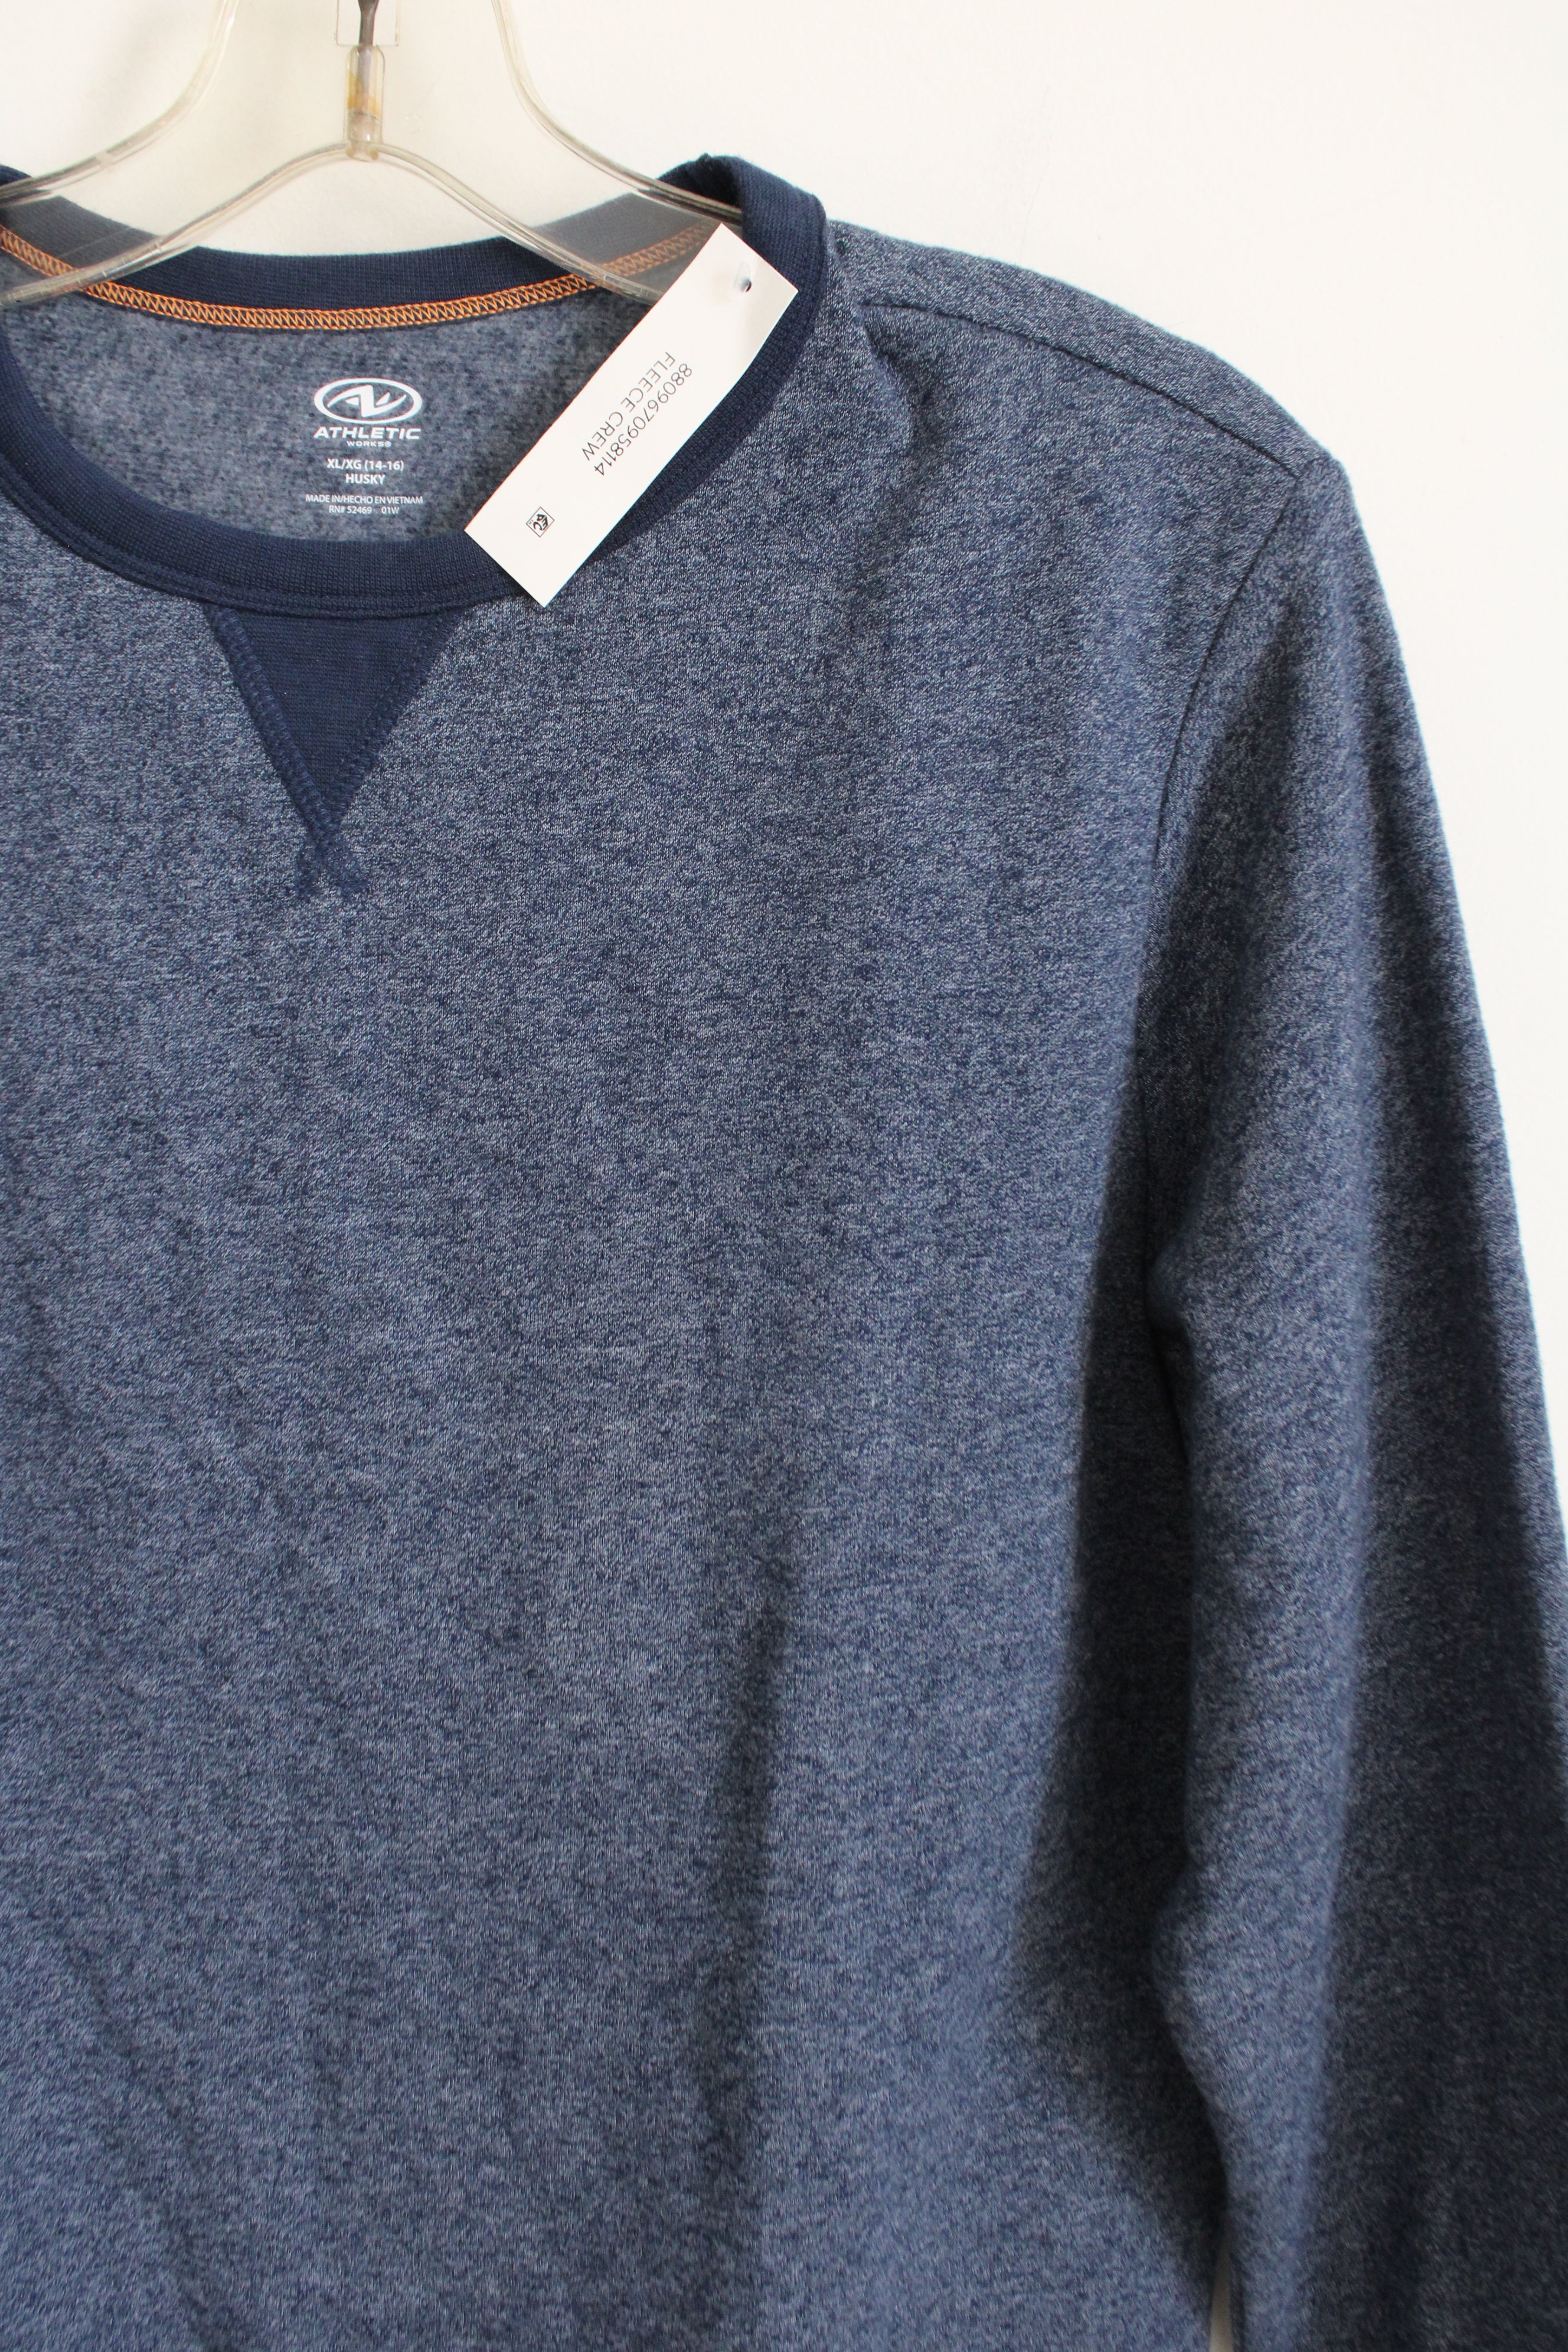 Athletic Works Blue Sweatshirt | XL